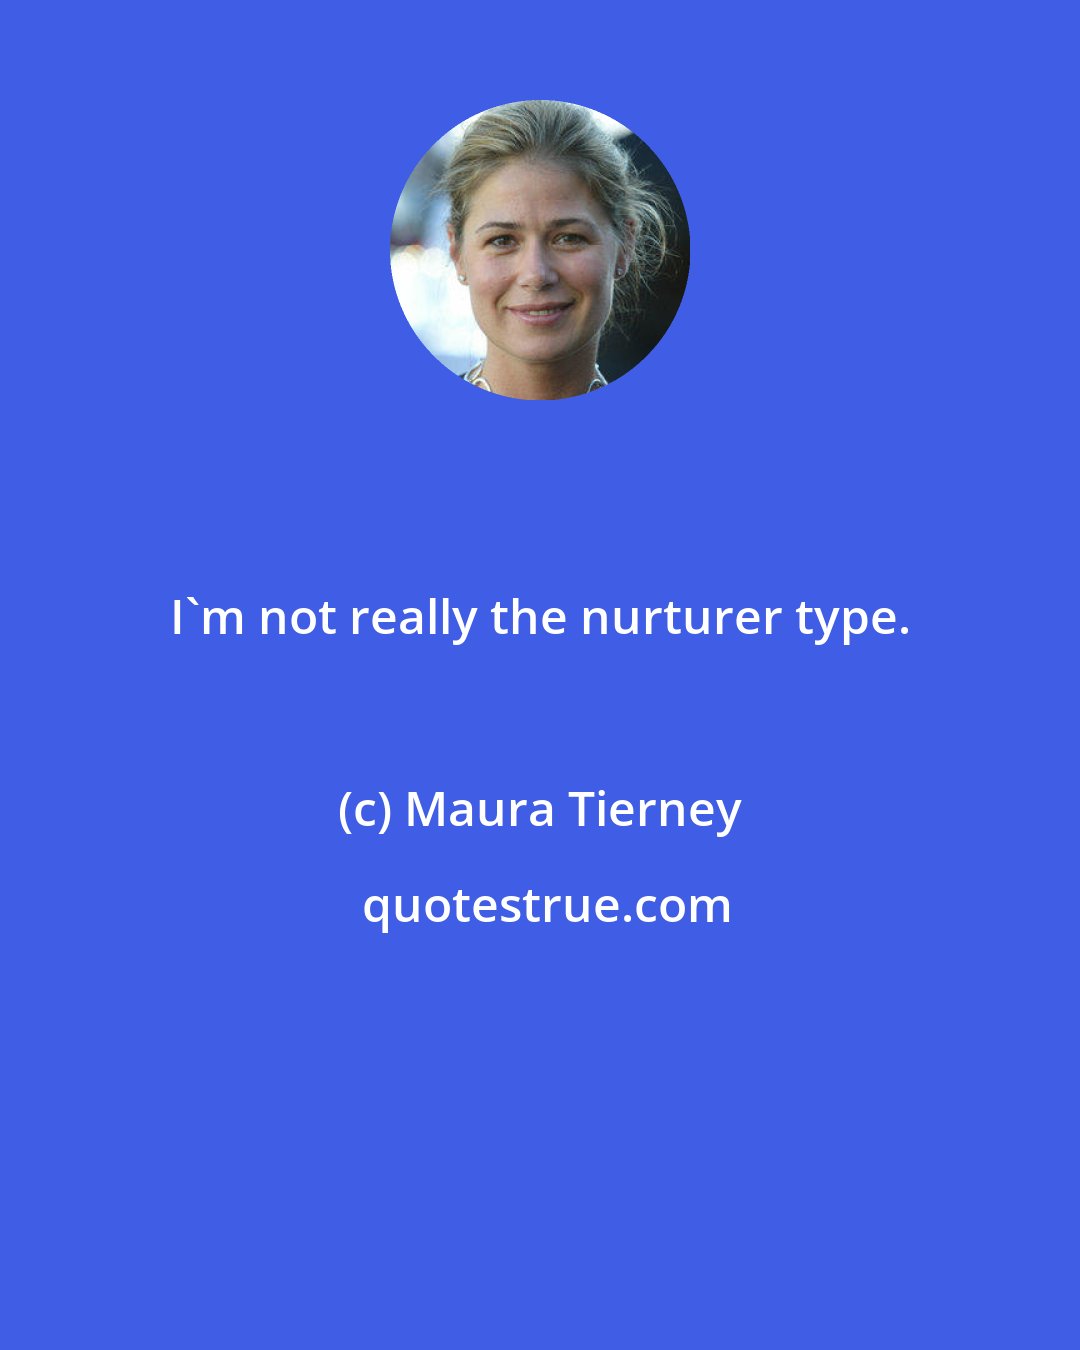 Maura Tierney: I'm not really the nurturer type.